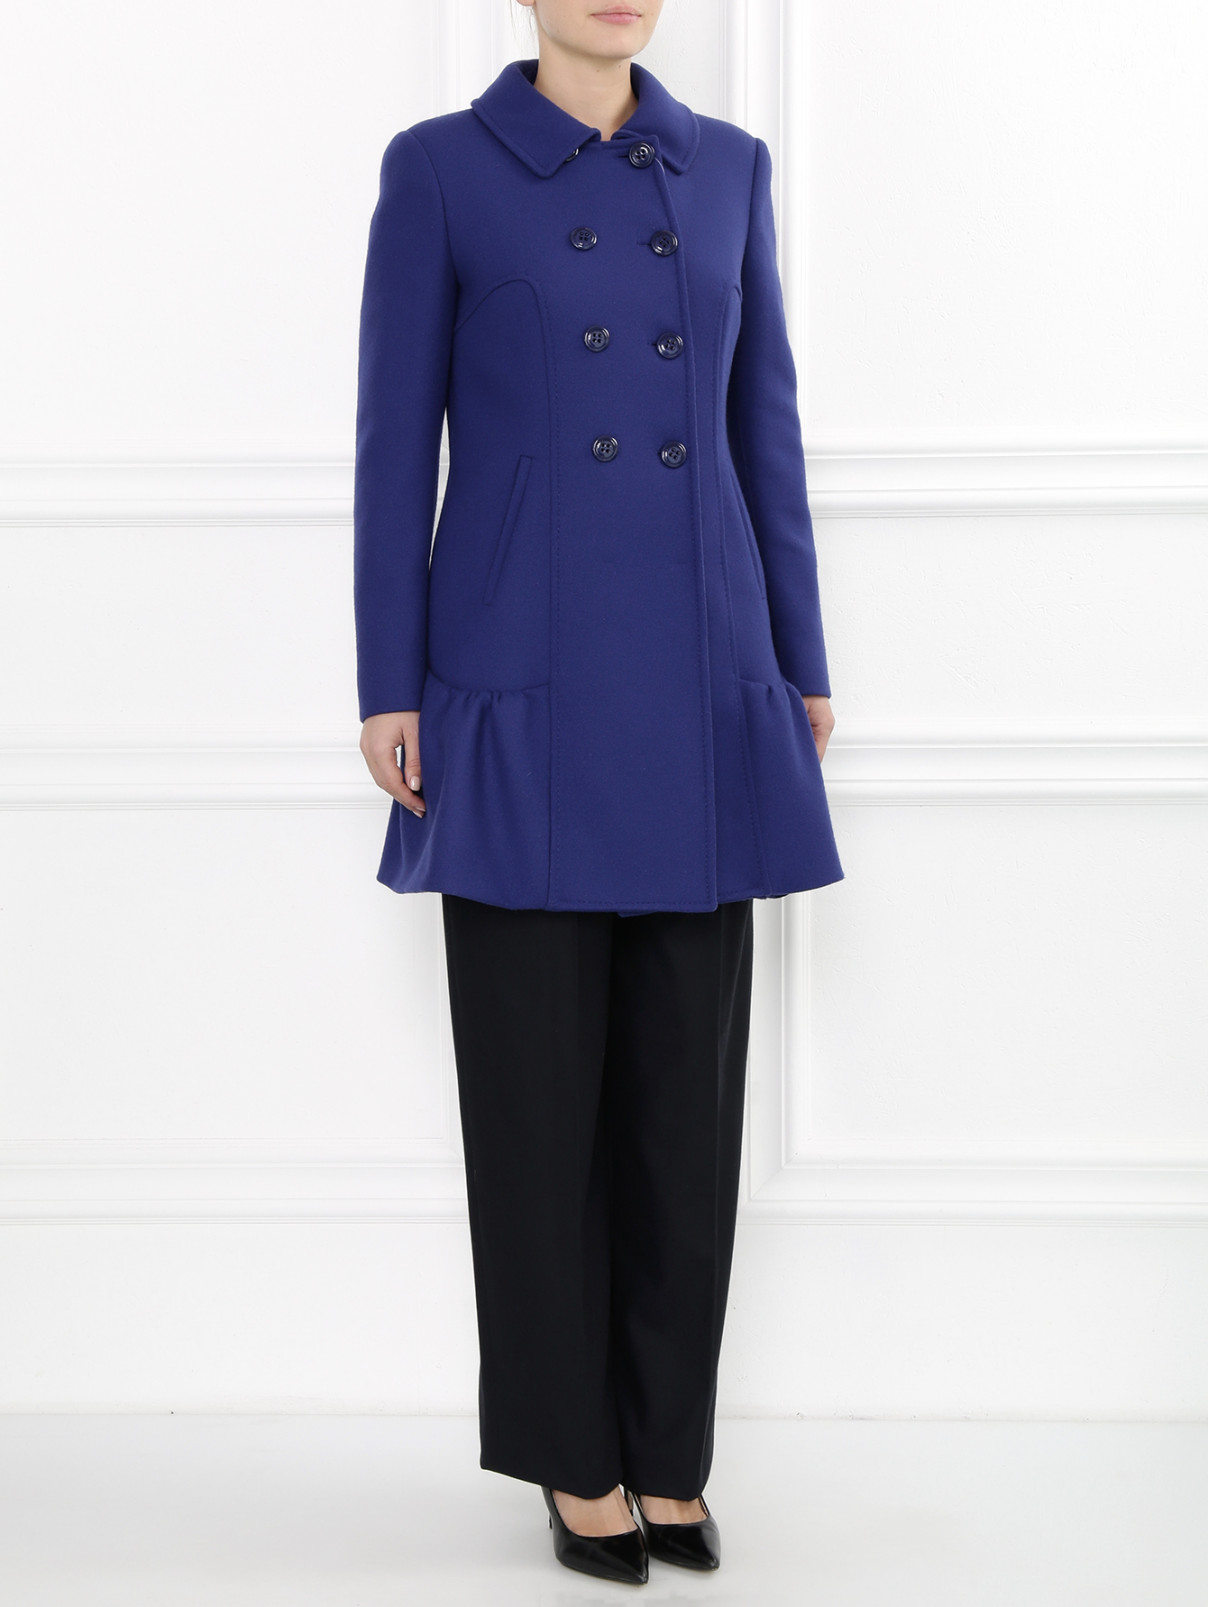 Пальто двубортное из шерсти и нейлона Moschino Cheap&Chic  –  Модель Общий вид  – Цвет:  Синий